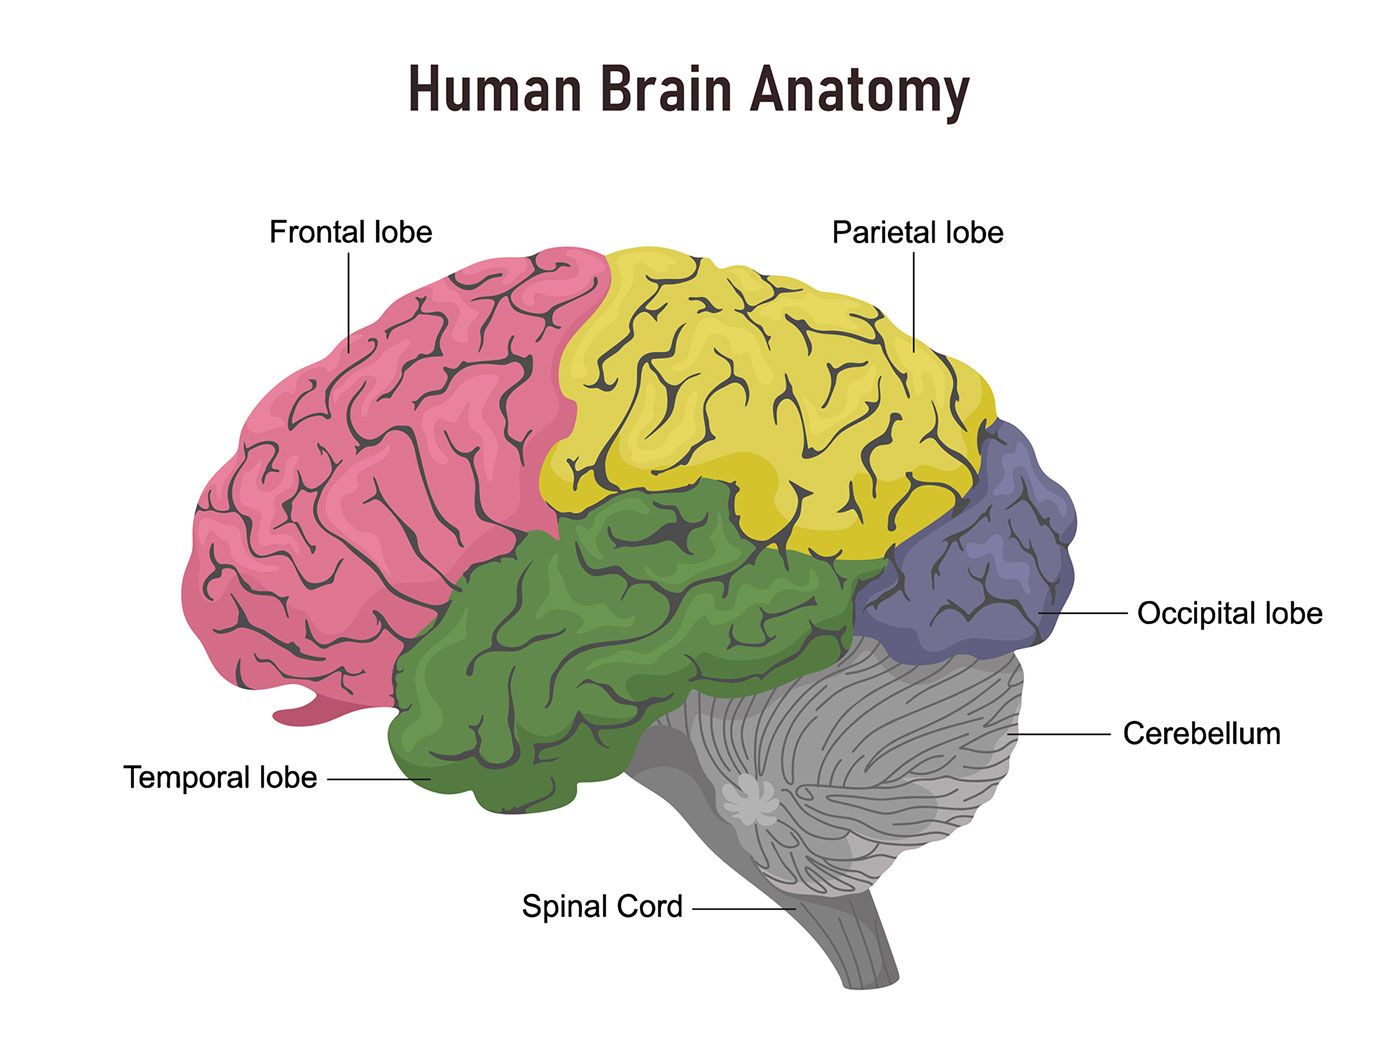 عکس تقسیم بندی شده مغز انسان به قسمت های مختلف